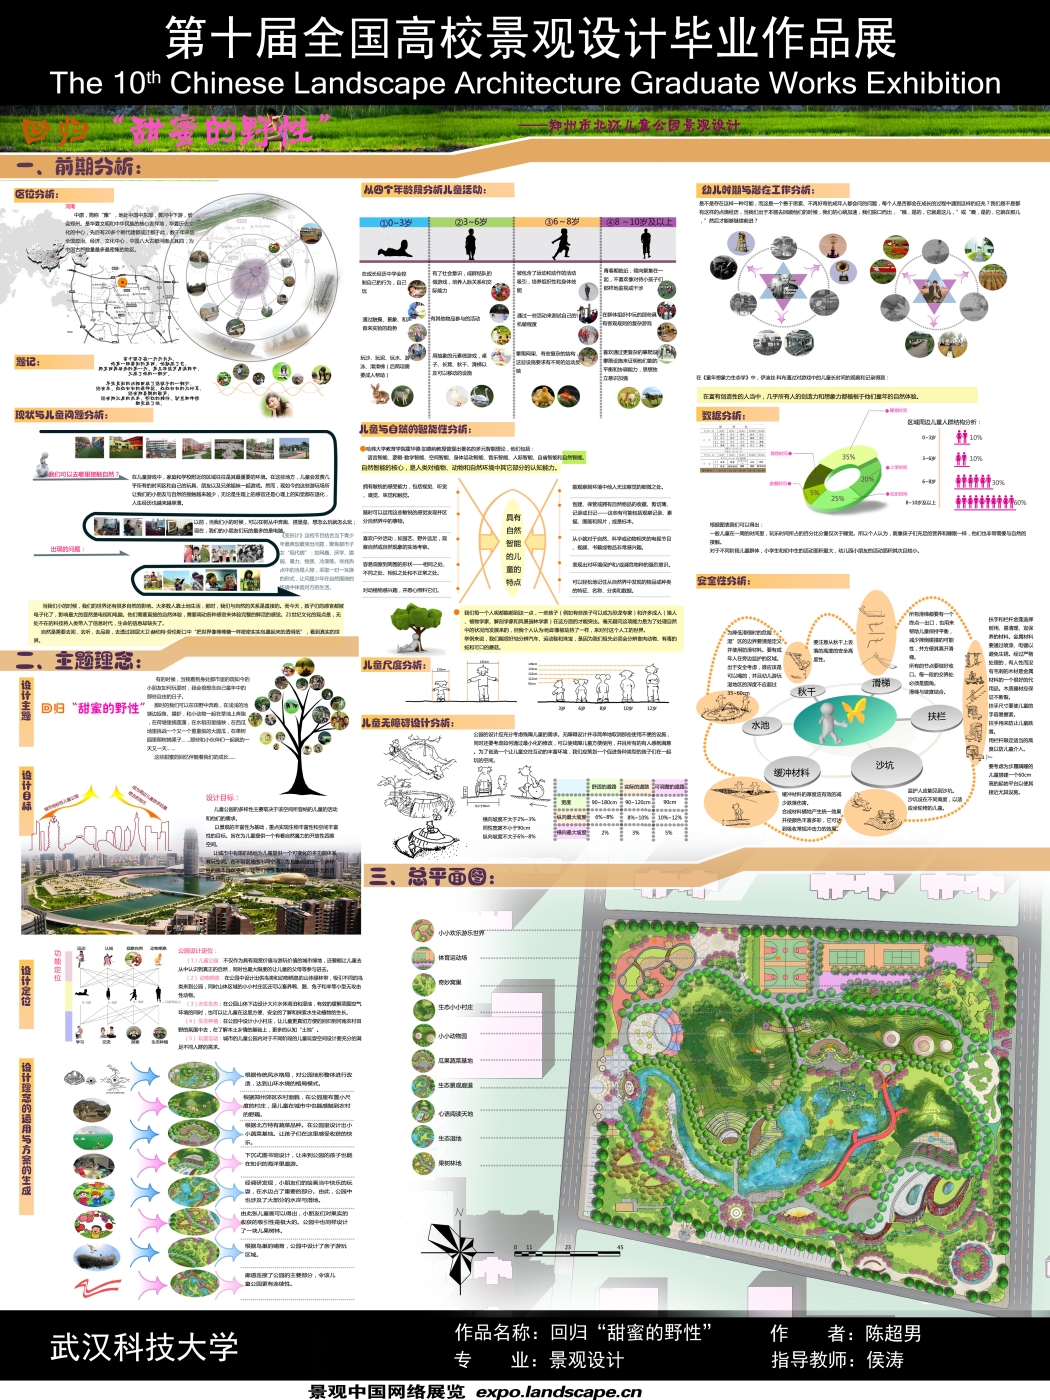 回归“甜蜜的野性”——郑州北环儿童公园景观设计-1